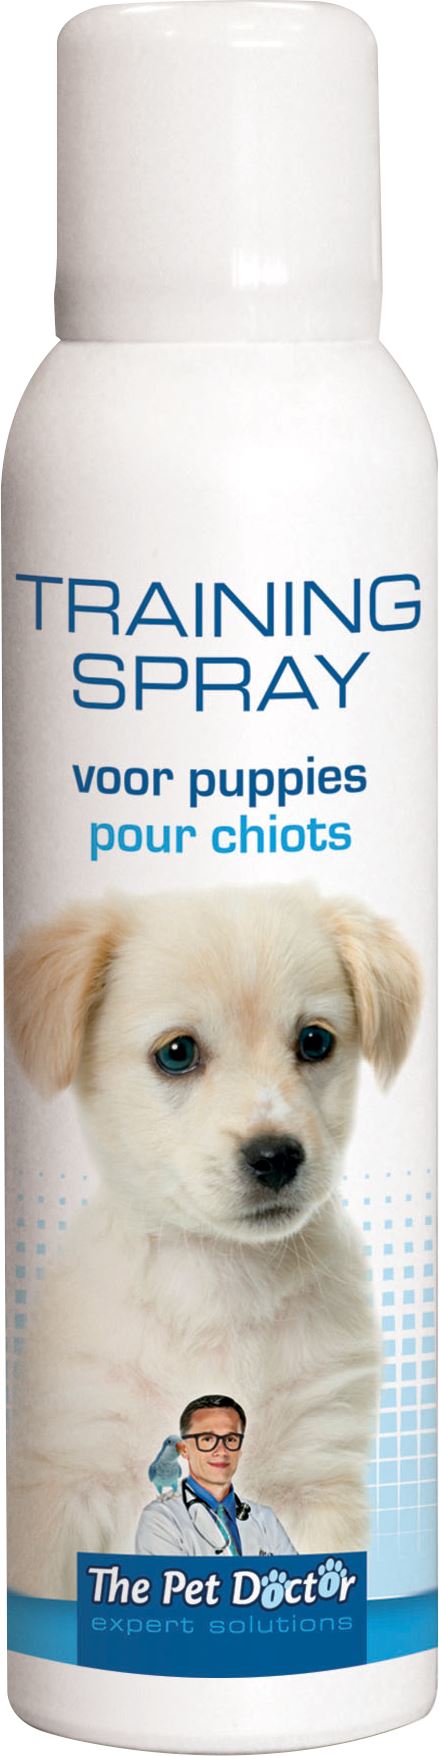 Training-spray-puppies-120ml-helpt-bij-de-opvoeding-van-de-jonge-hond